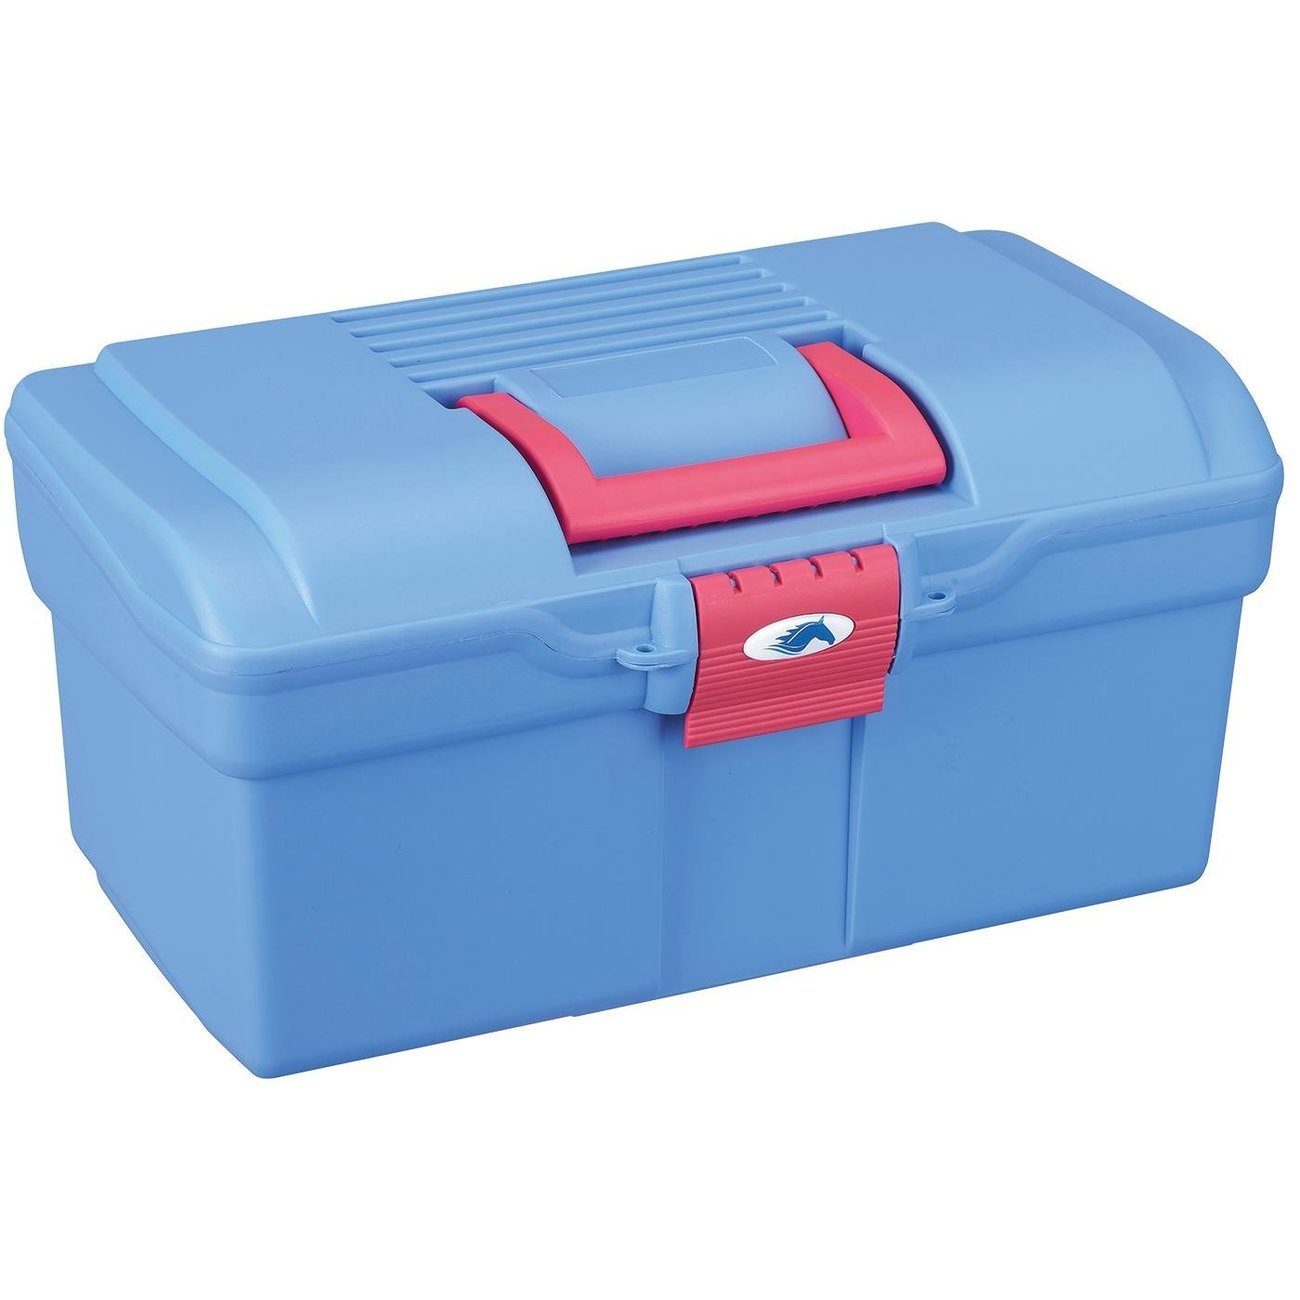 BUSSE Striegel Putzbox Nino ultramarine blue